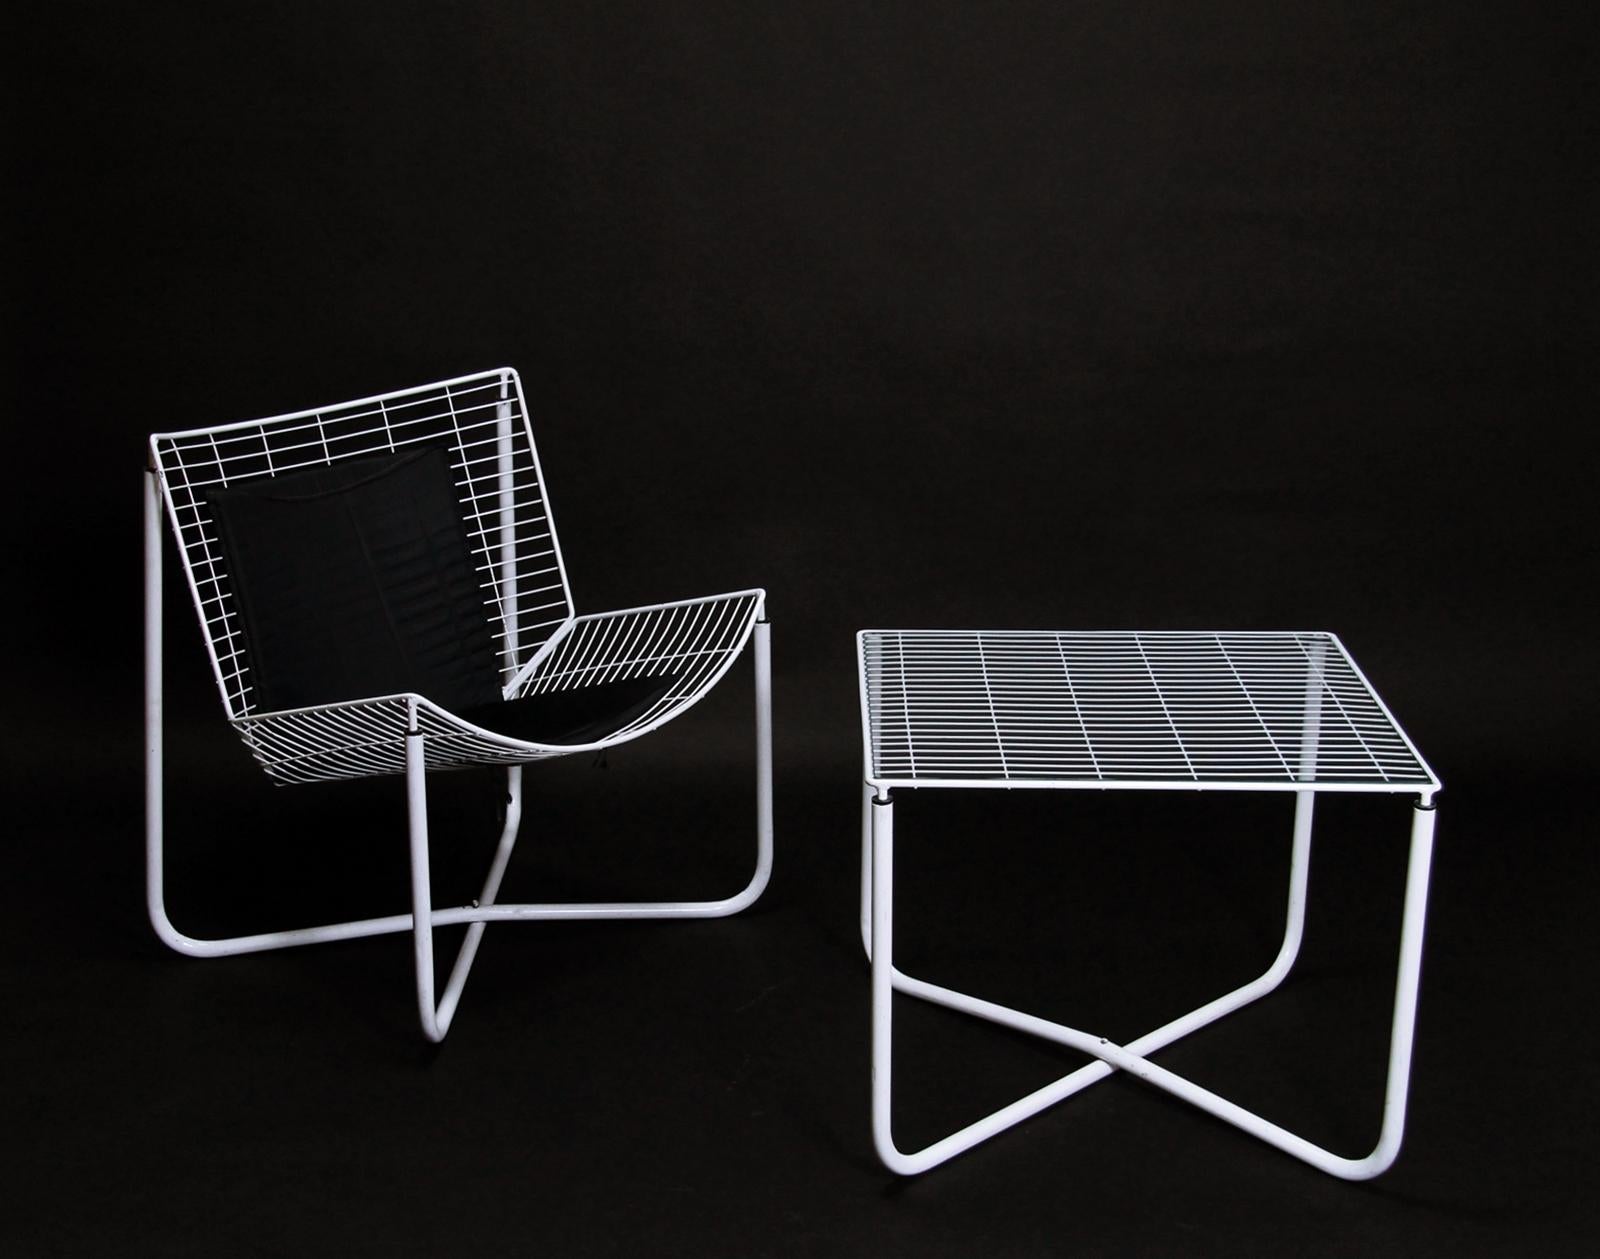 Metal Postmodern White Jarpen Table by Niels Gammelgaard for Ikea, 1983